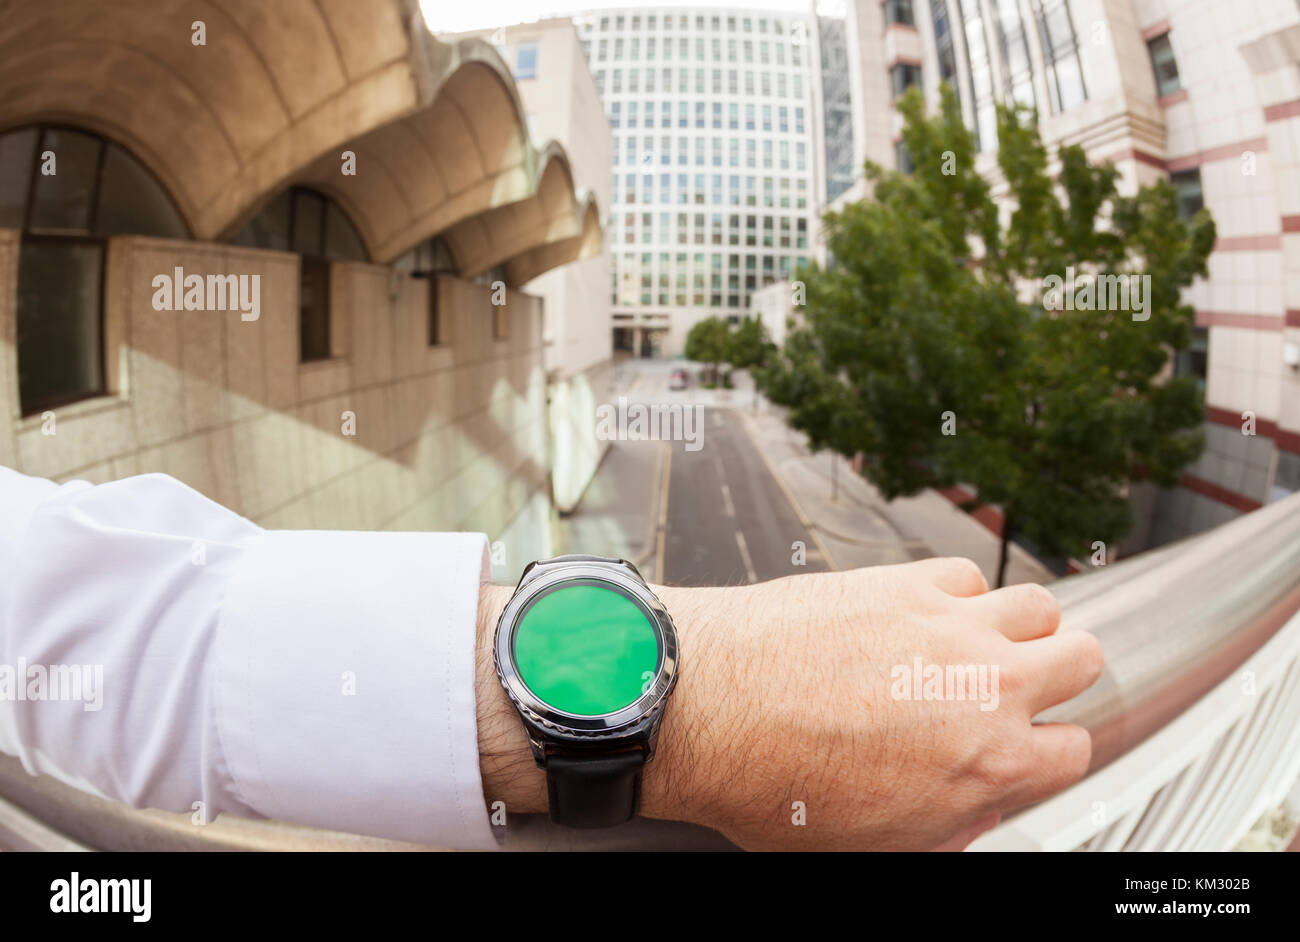 Point de vue personnel d'un homme portant une smartwatch thèmes de smart watch avec un écran vert Banque D'Images